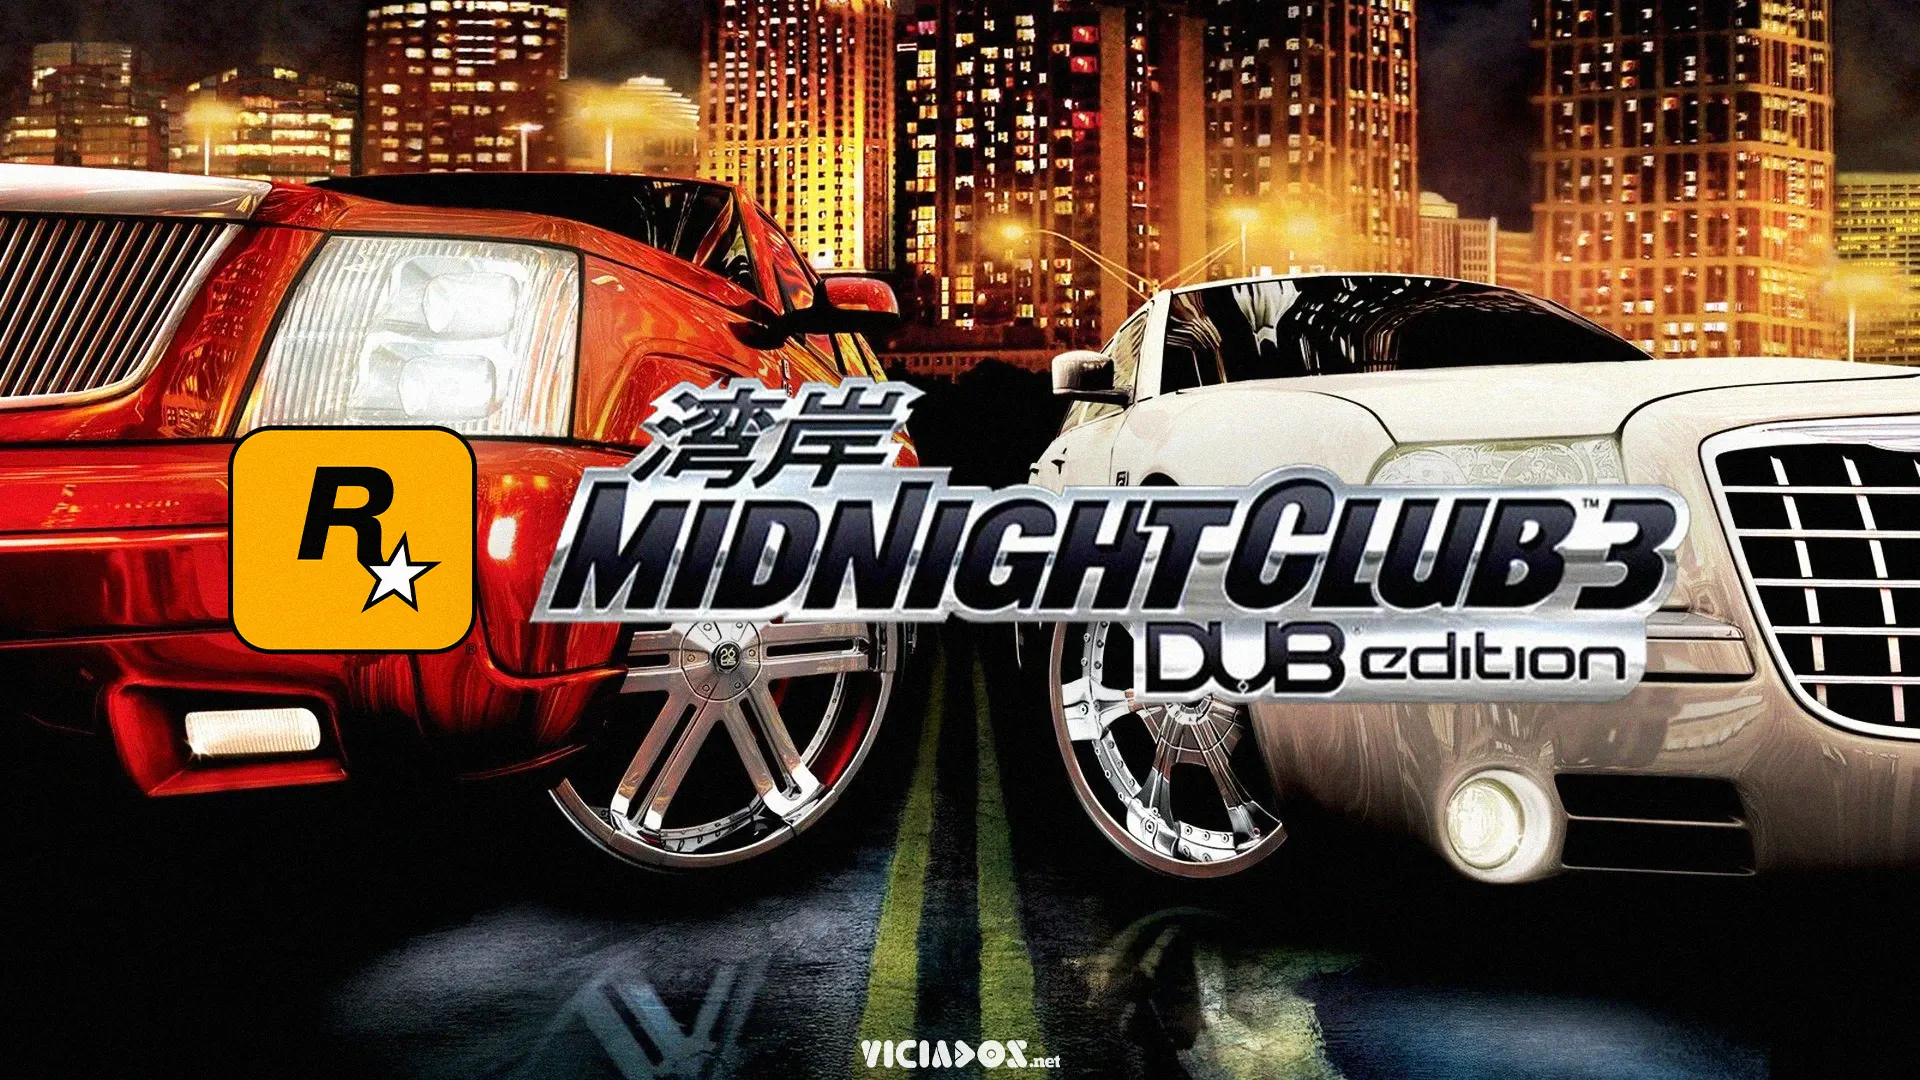 Quais as chances de termos um Midnight Club 3 remasterizado? 2022 Viciados